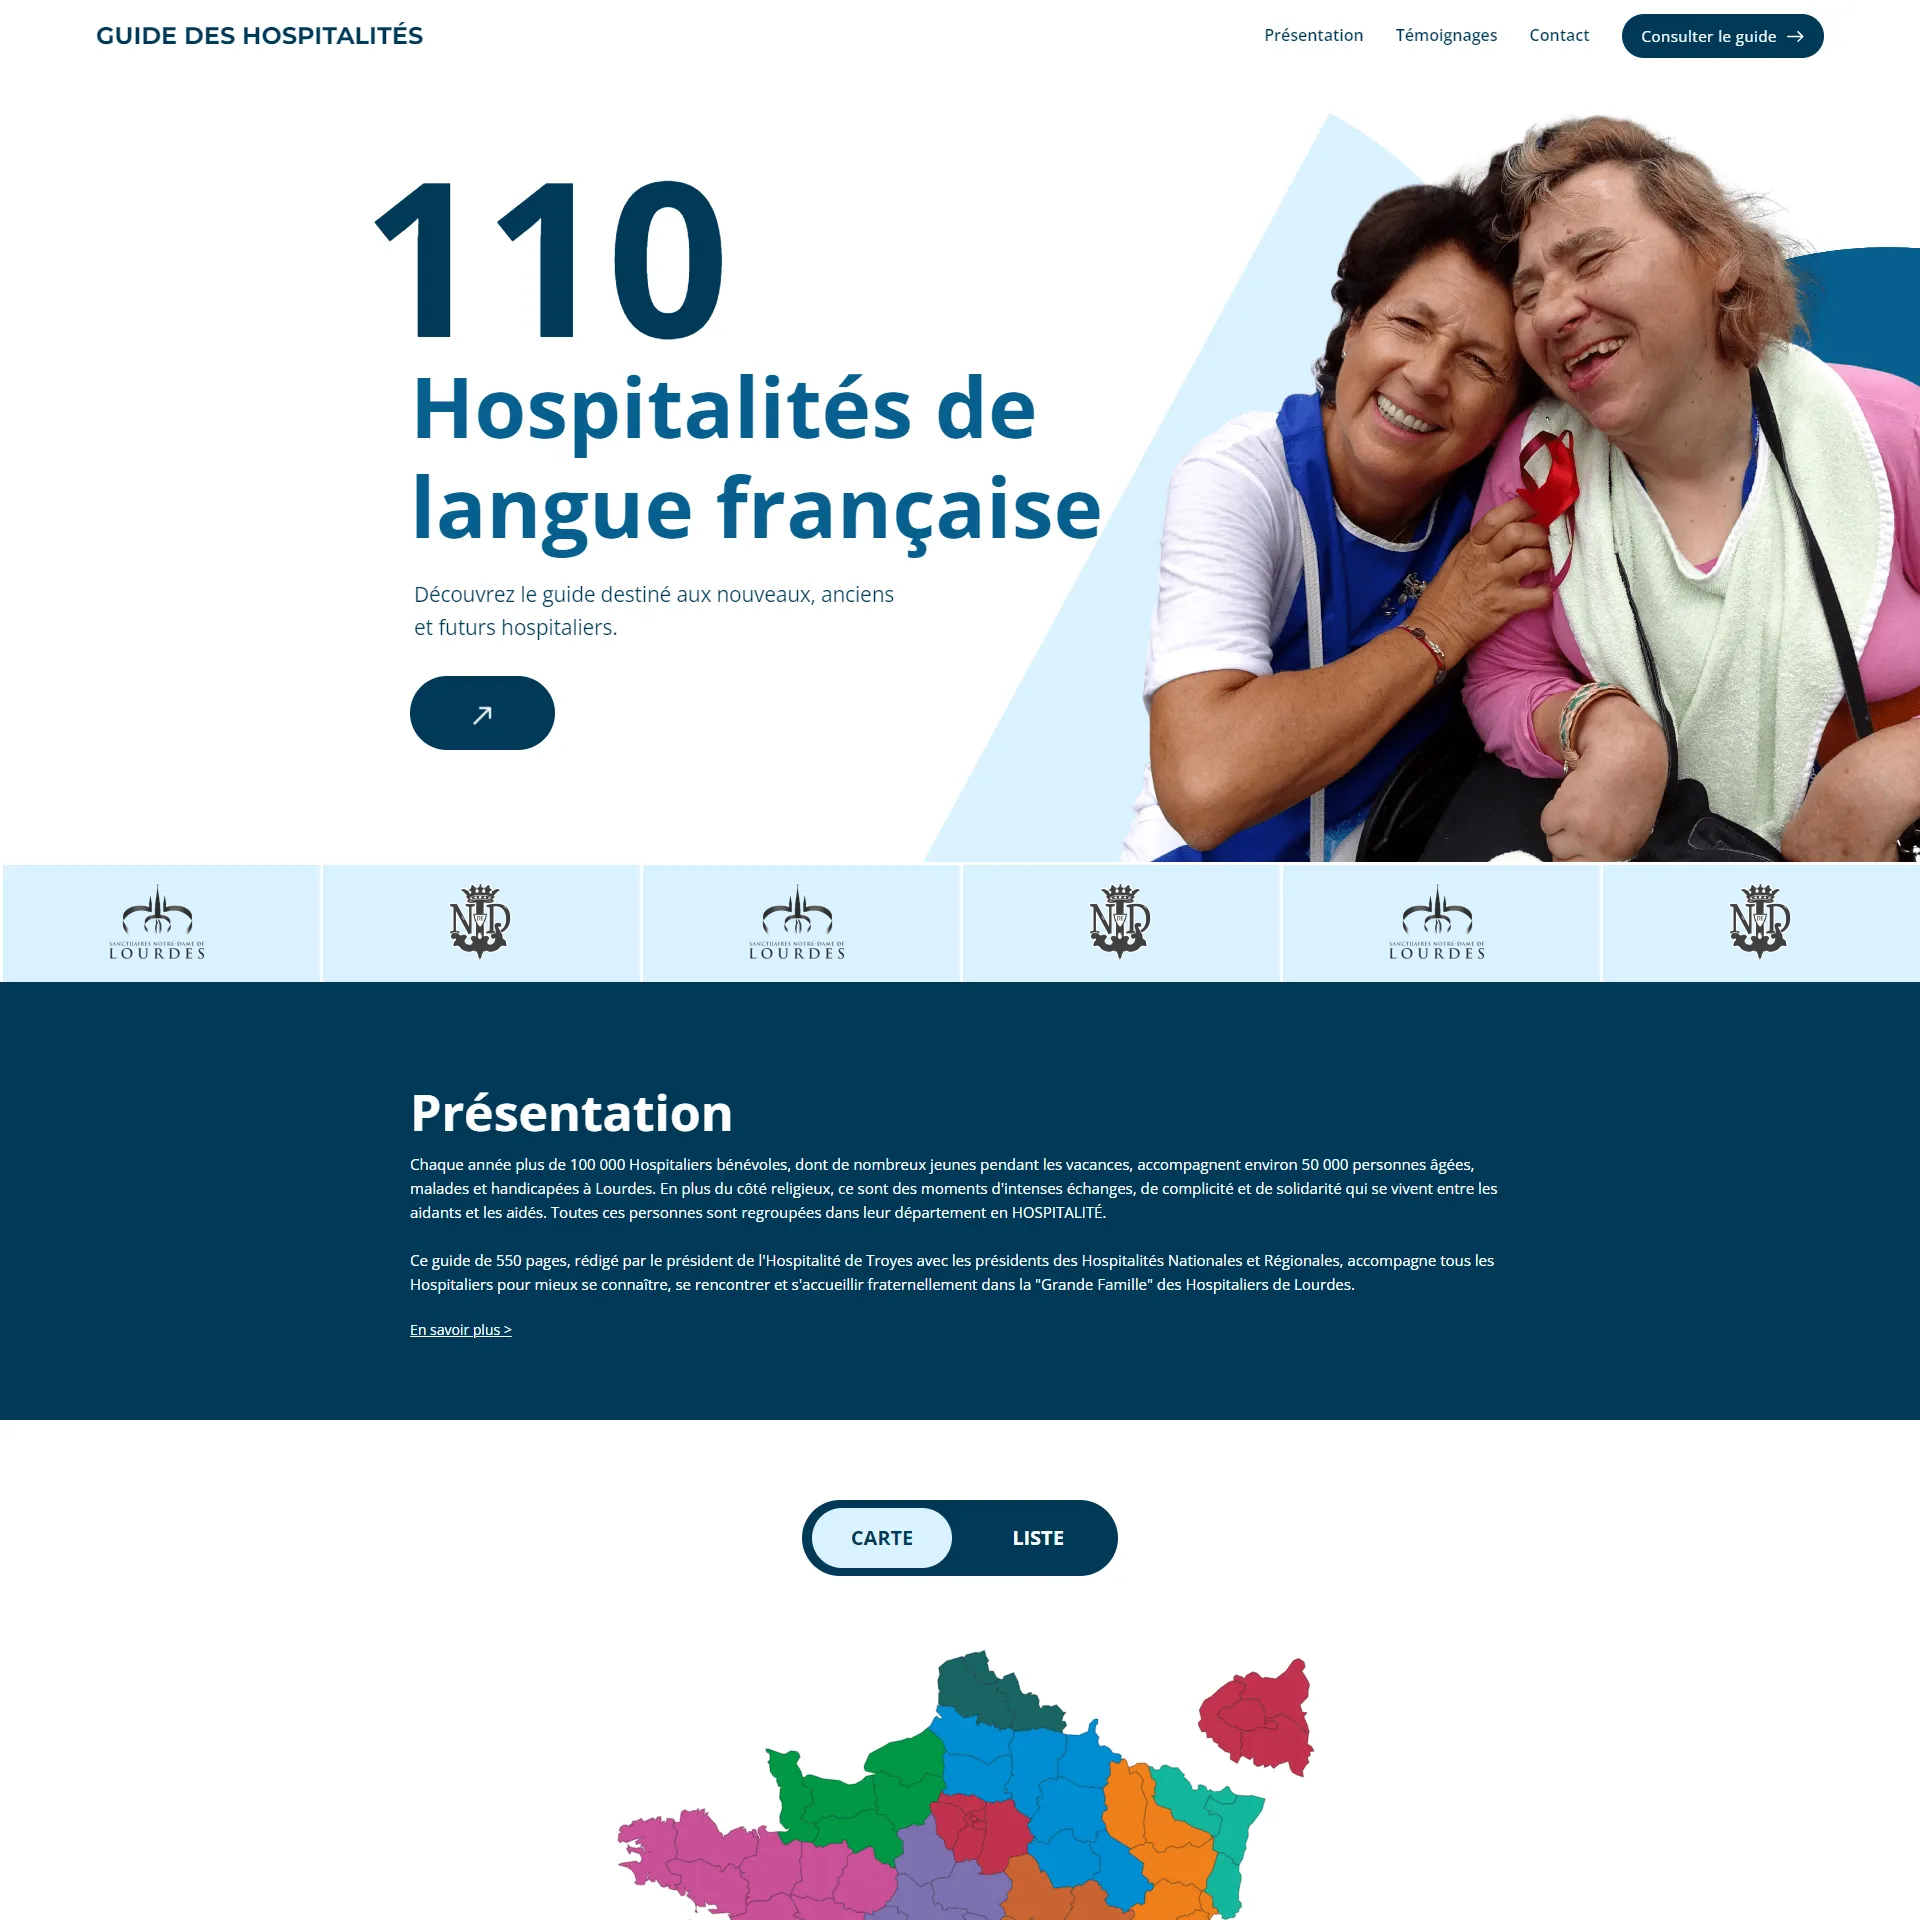 Project Guide des Hospitalités preview